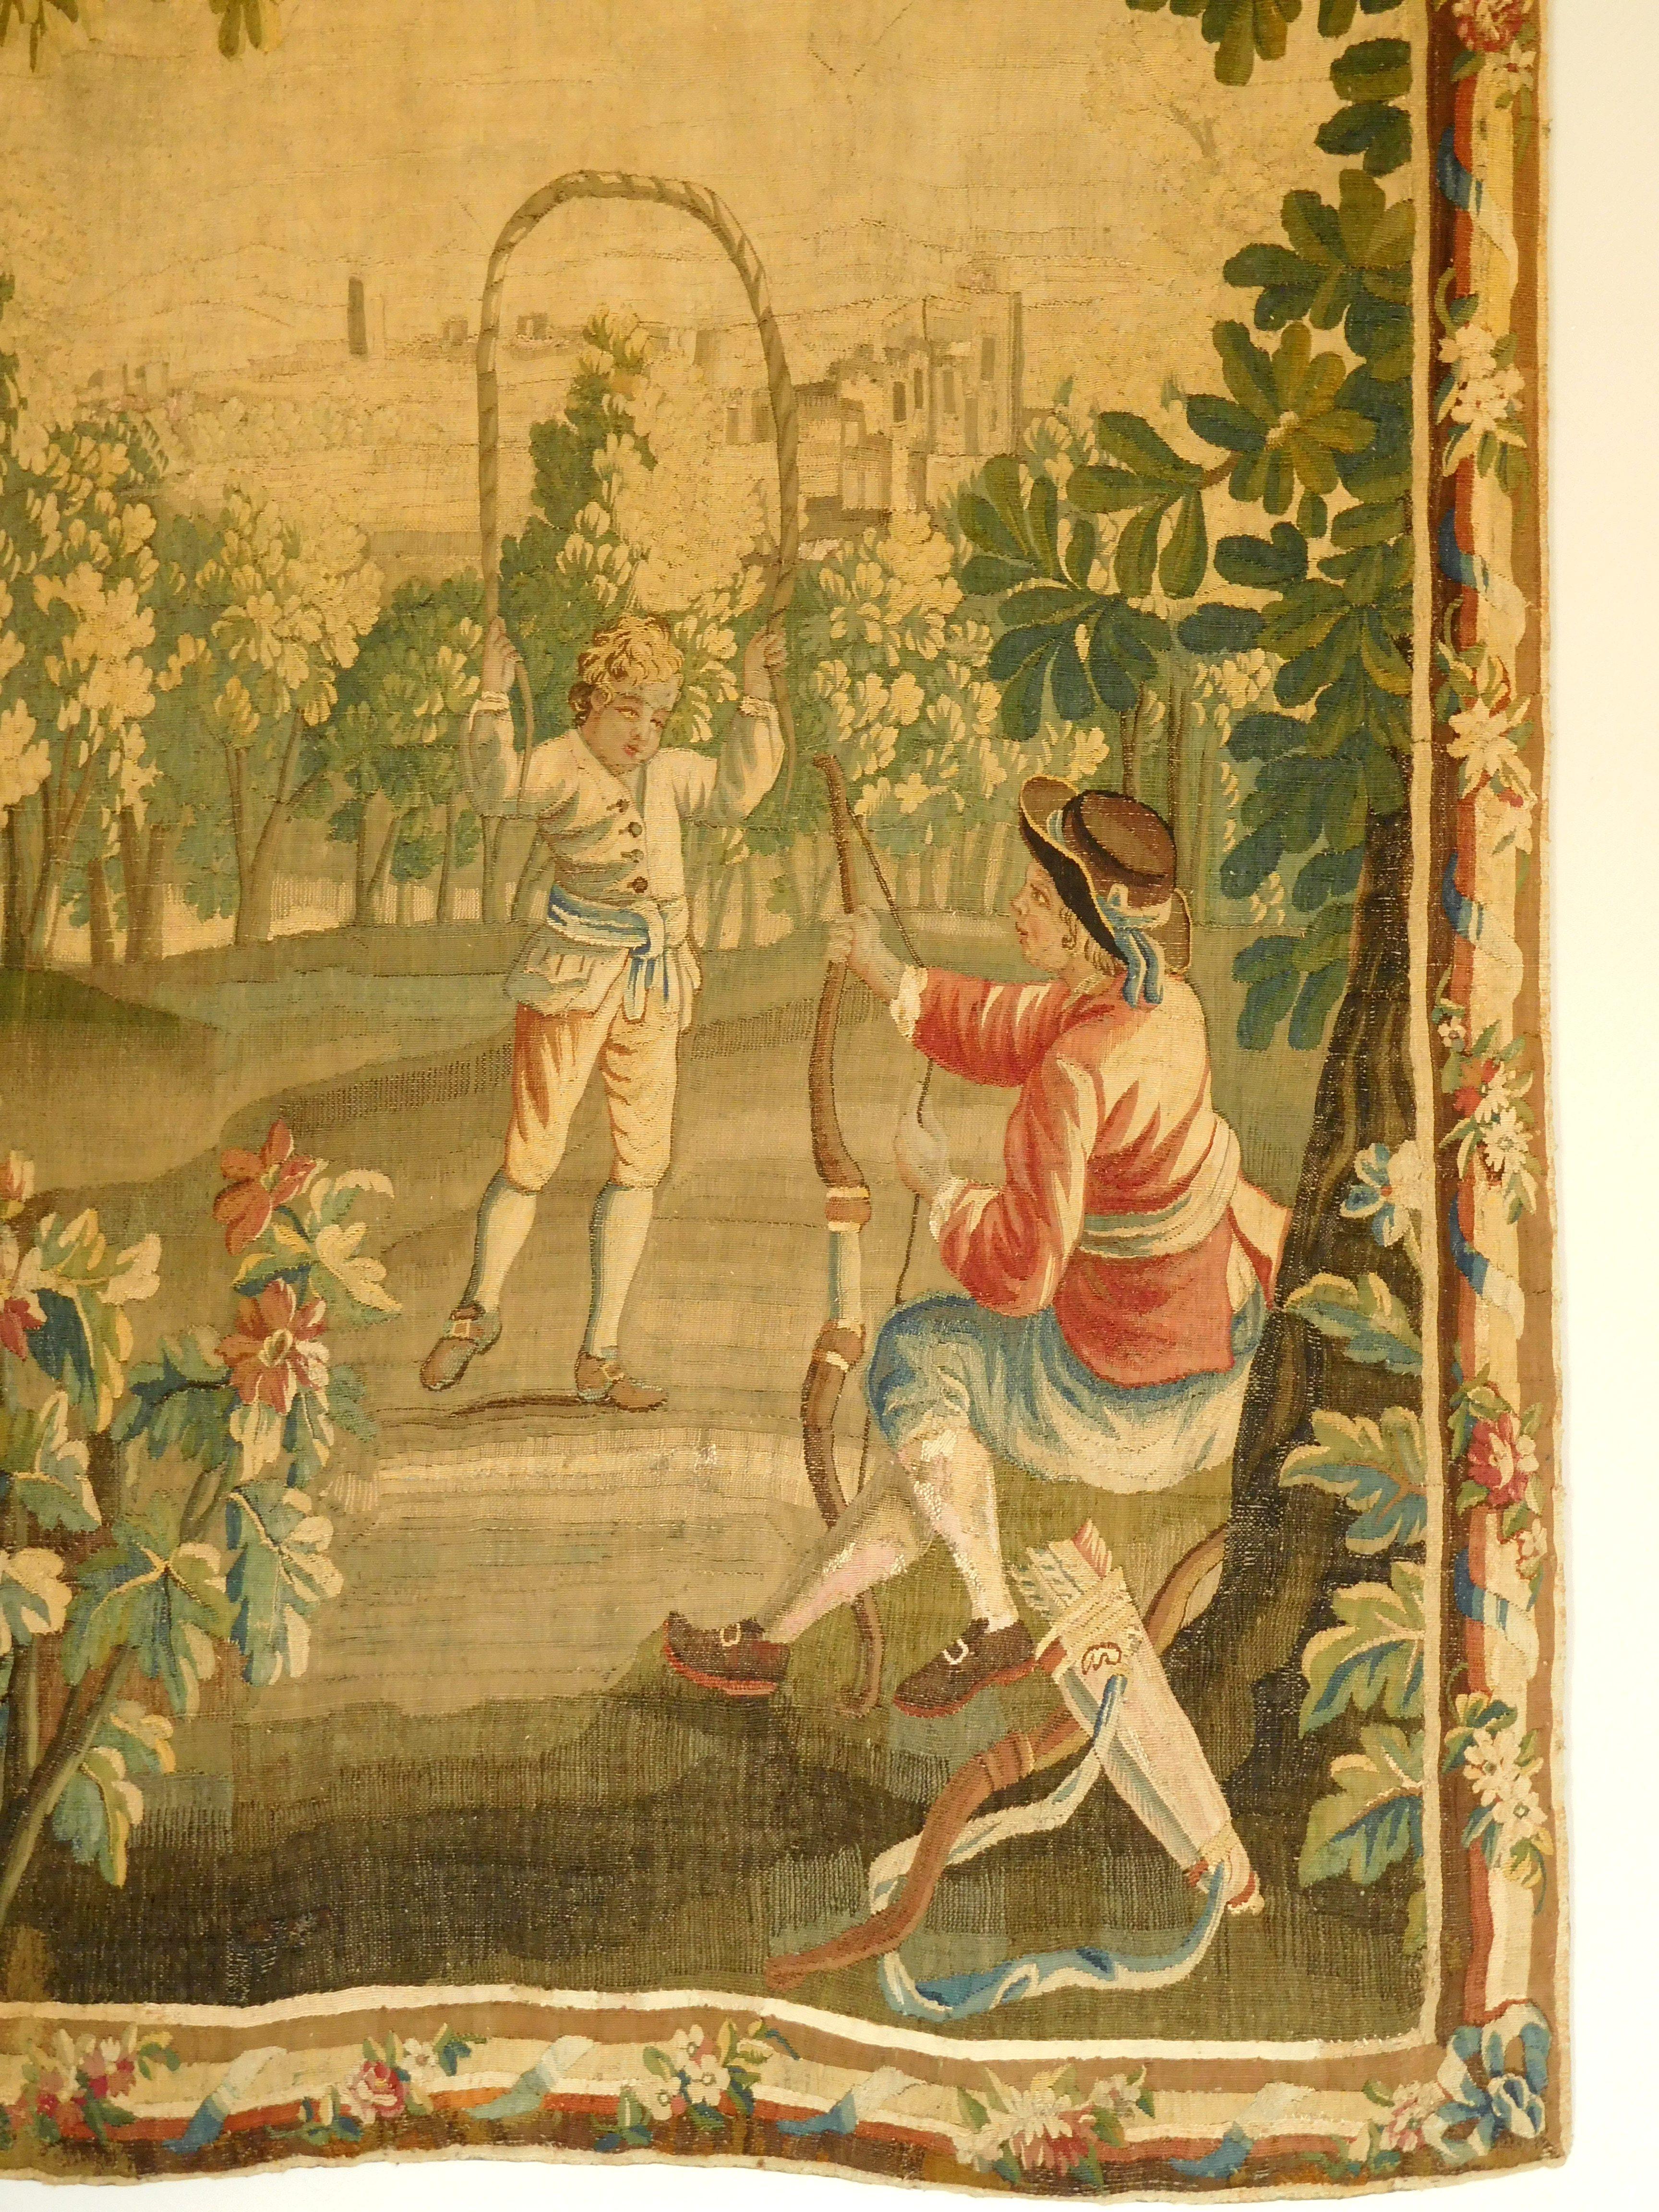 Charmante tapisserie en laine et soie - production du 18ème siècle (période Louis XVI vers 1780) attribuée à la Manufacture d'Aubusson.

Elle représente deux jeunes garçons jouant dans les jardins : l'un fait du tir à l'arc et l'autre joue à la